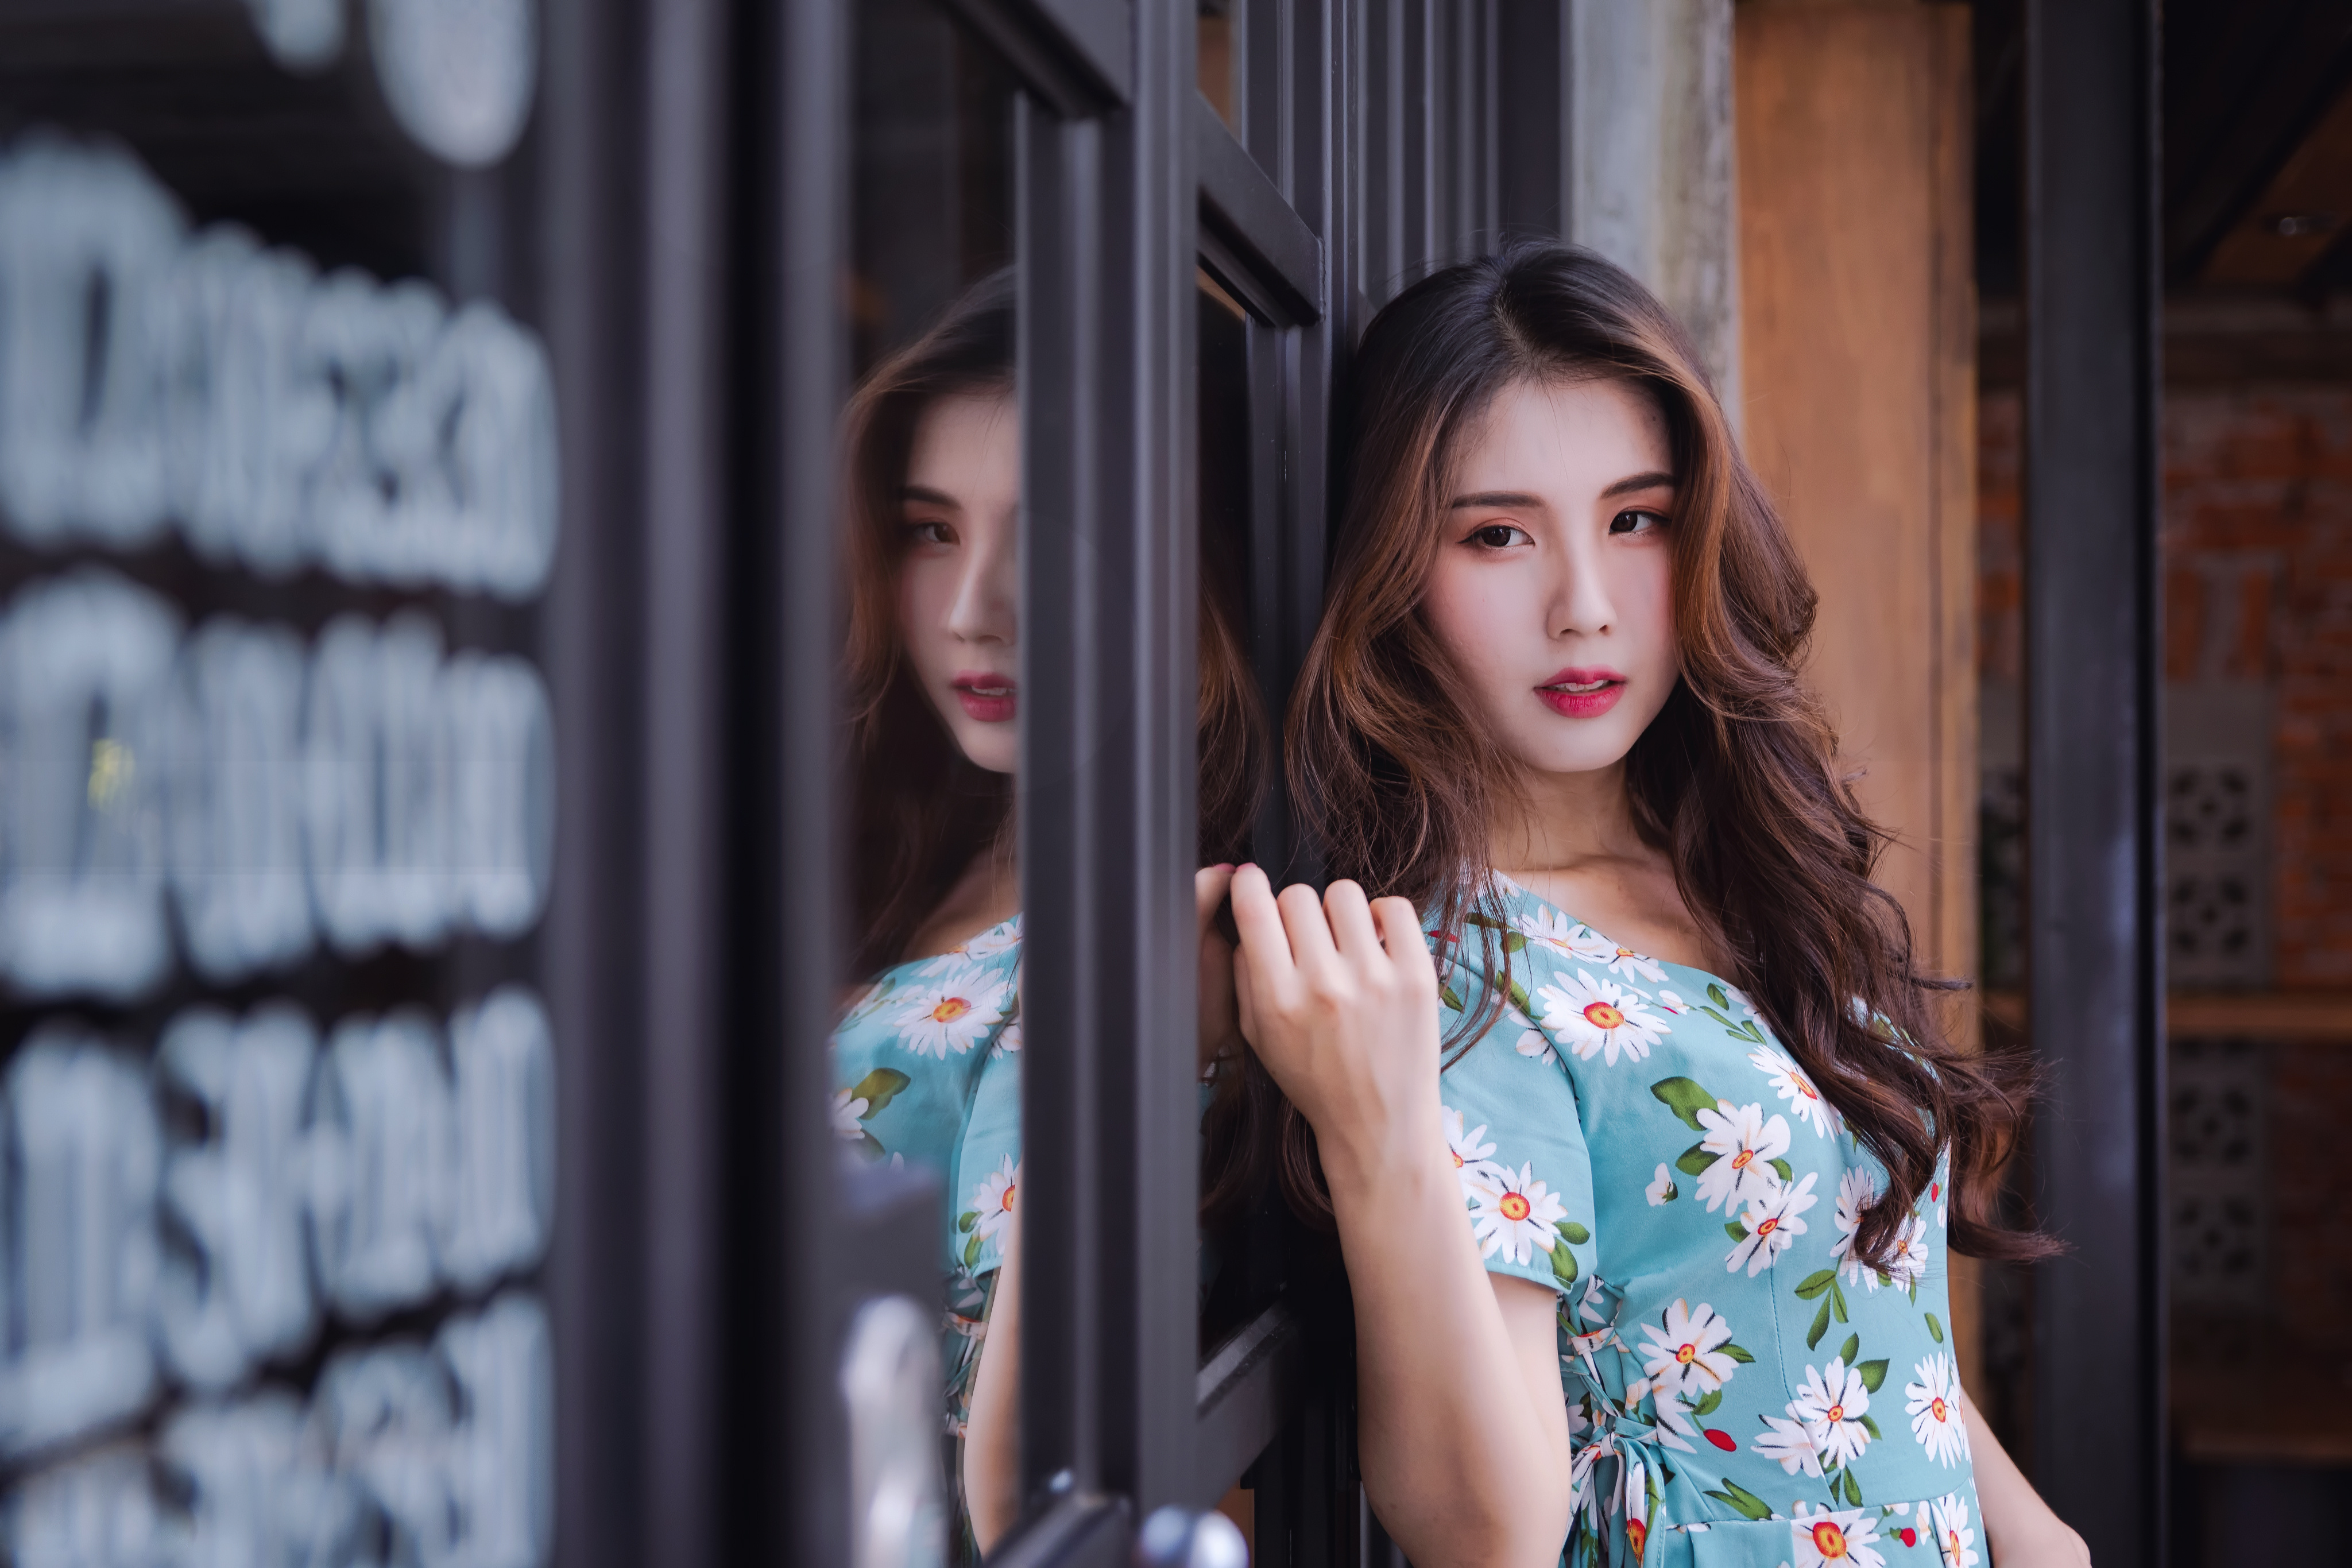 Asian Model Women Brunette Long Hair Leaning Flower Dress Window Frames Looking Away 4096x2731